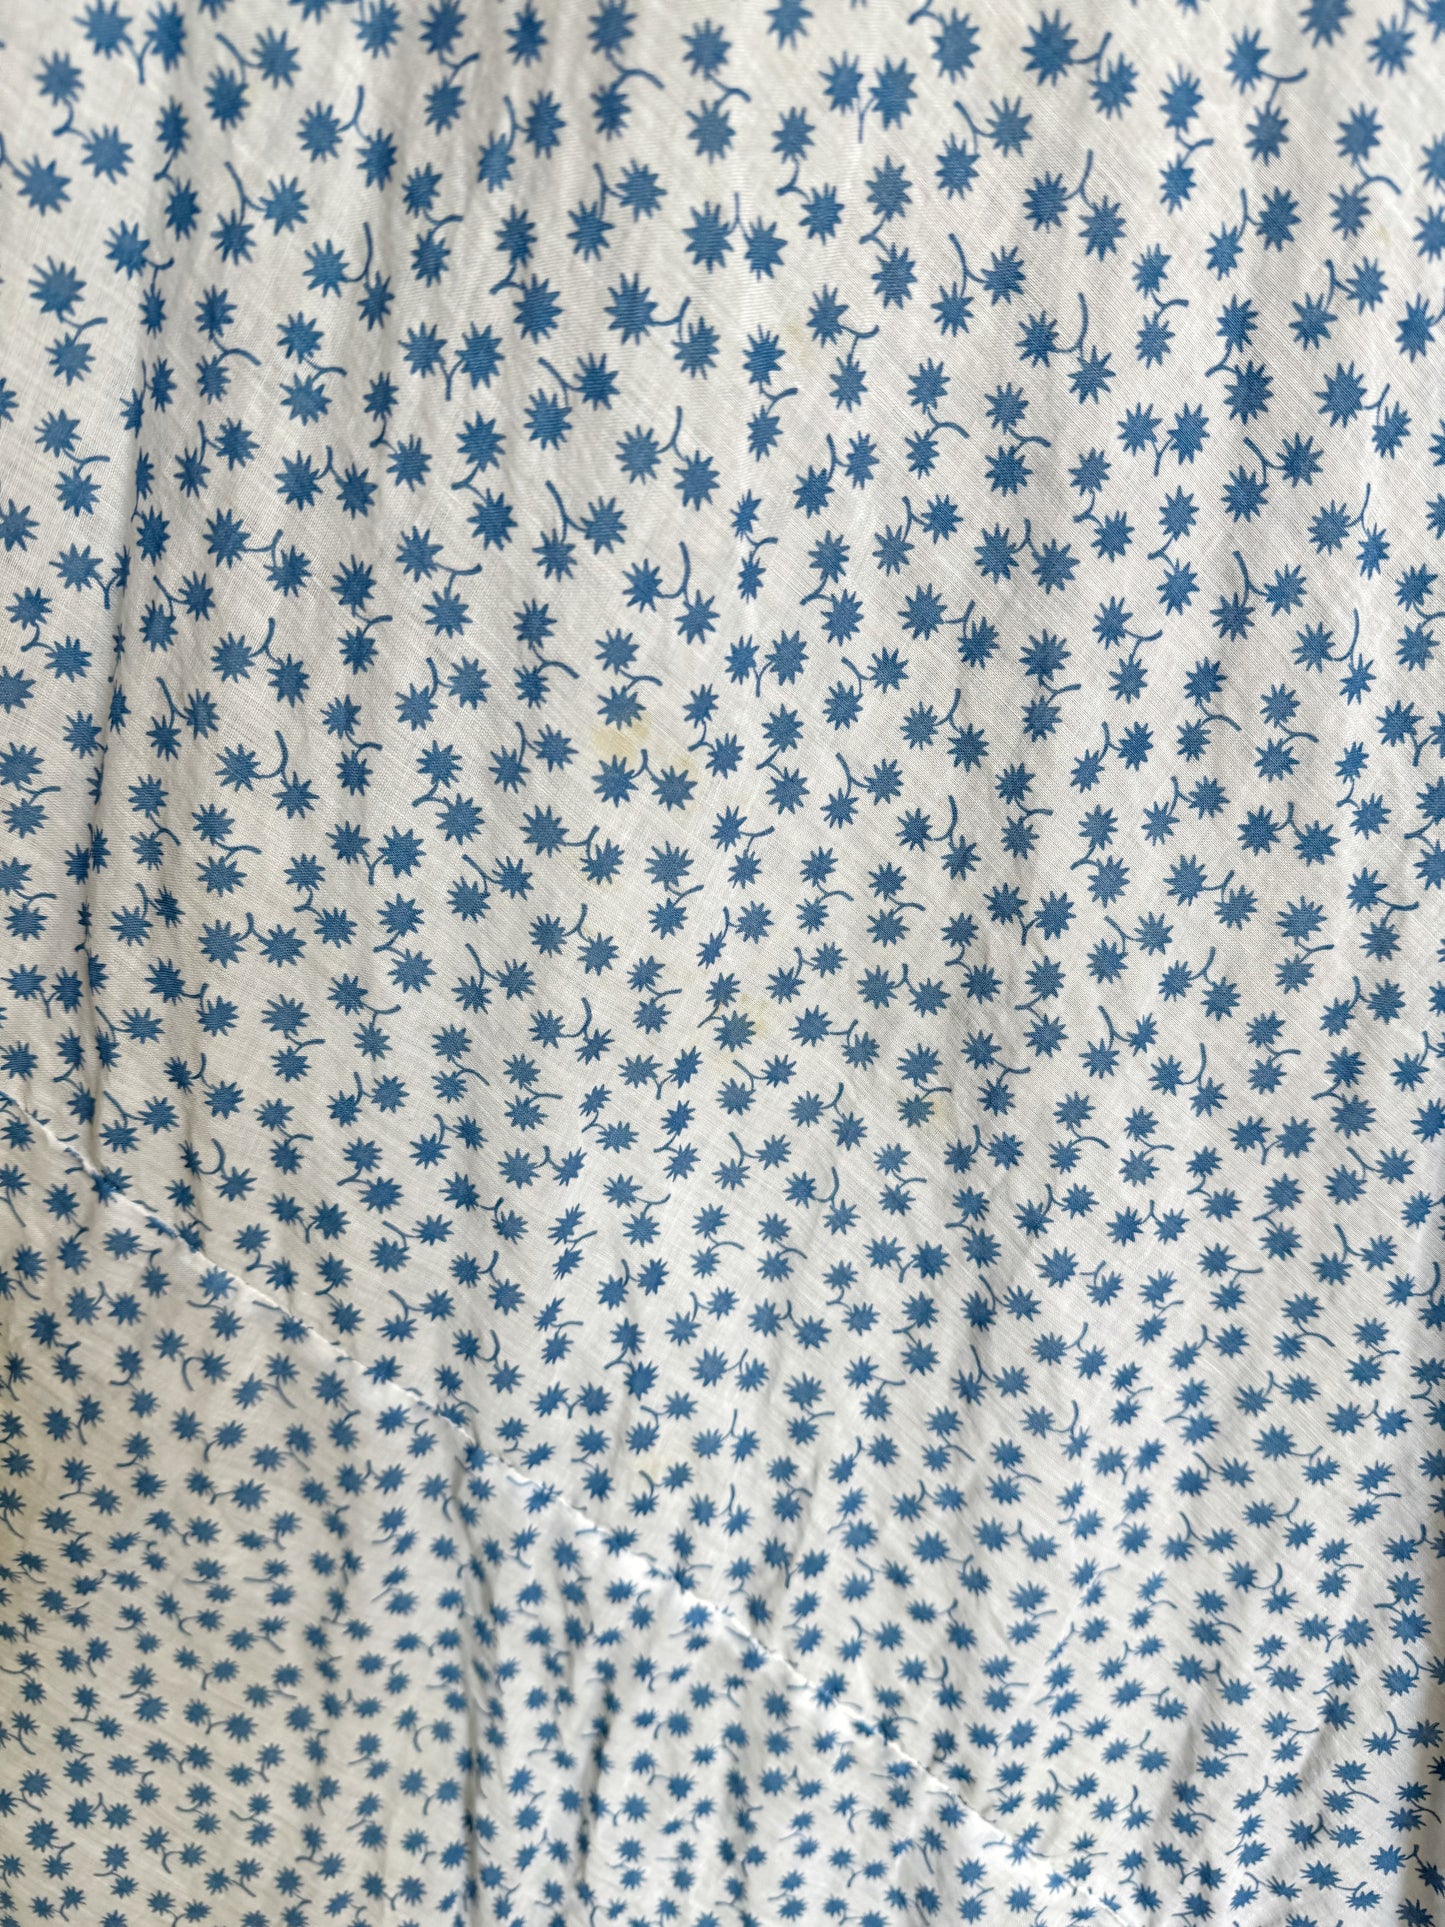 1930s White + Blue Floral Cotton Voile Dress w/ Bows- M-L